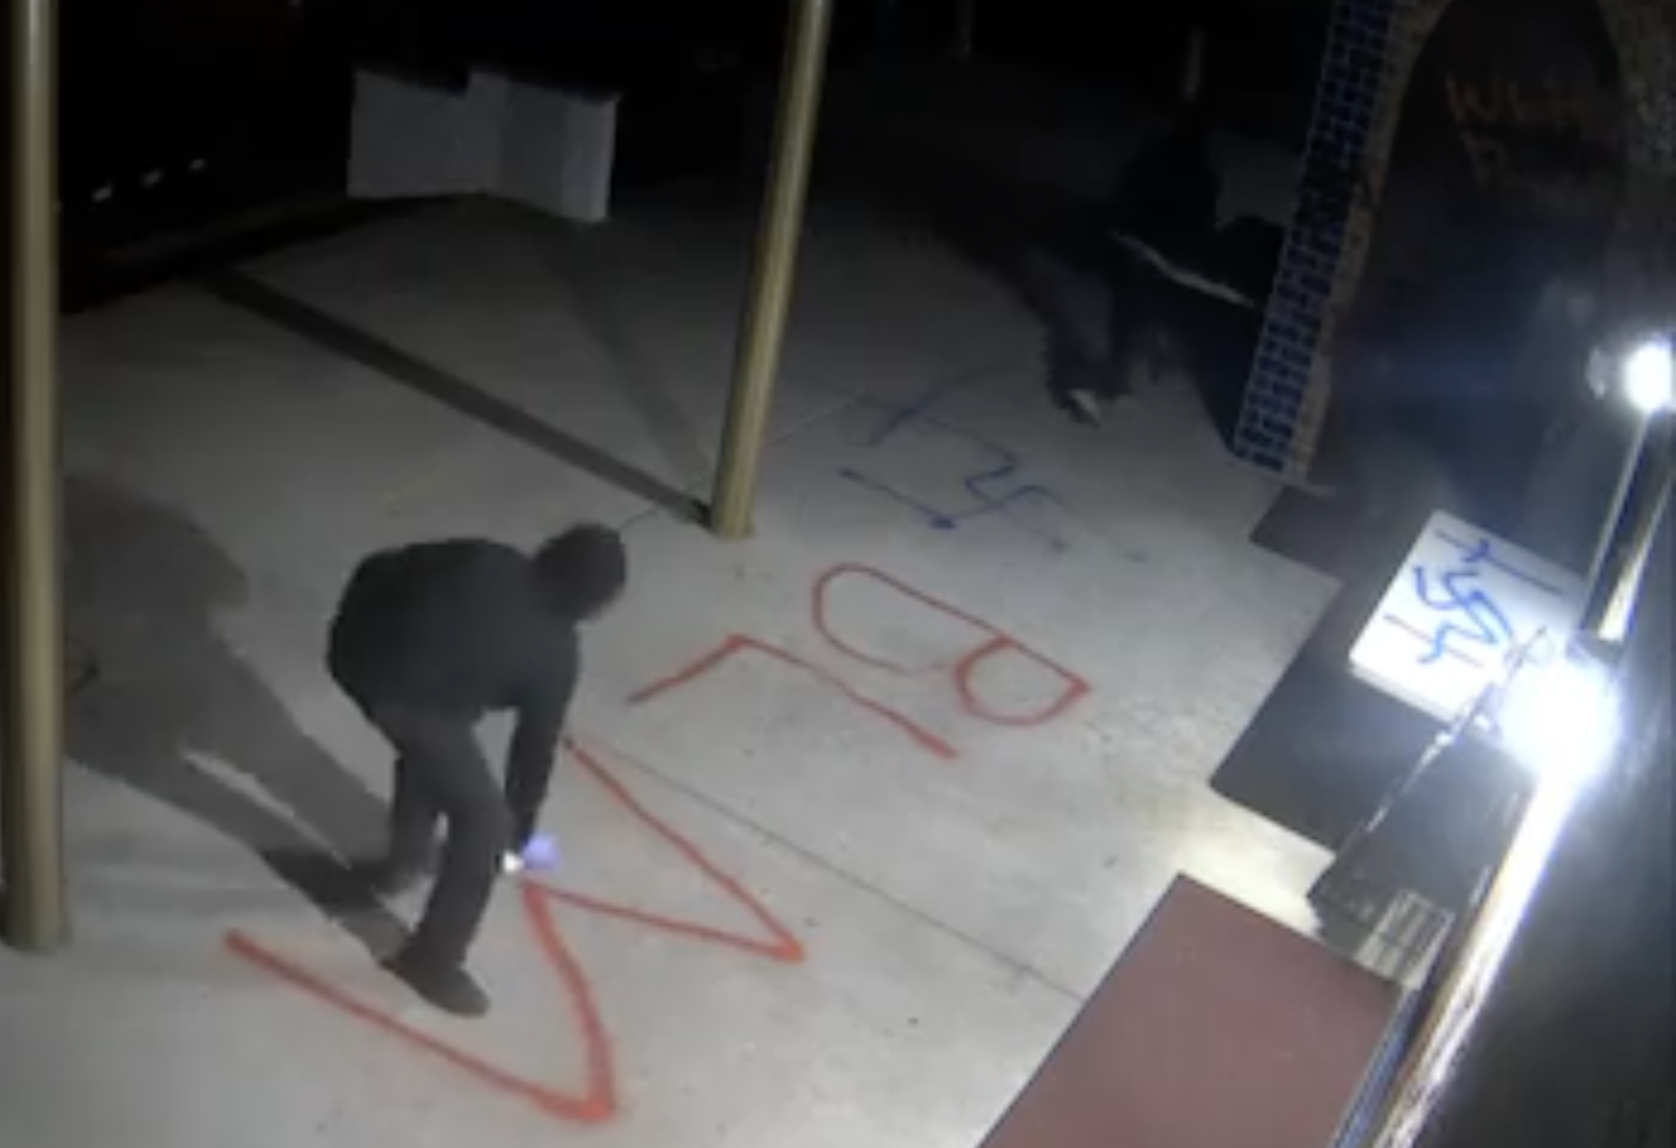 BLM thug paints swastikas at Catholic Church